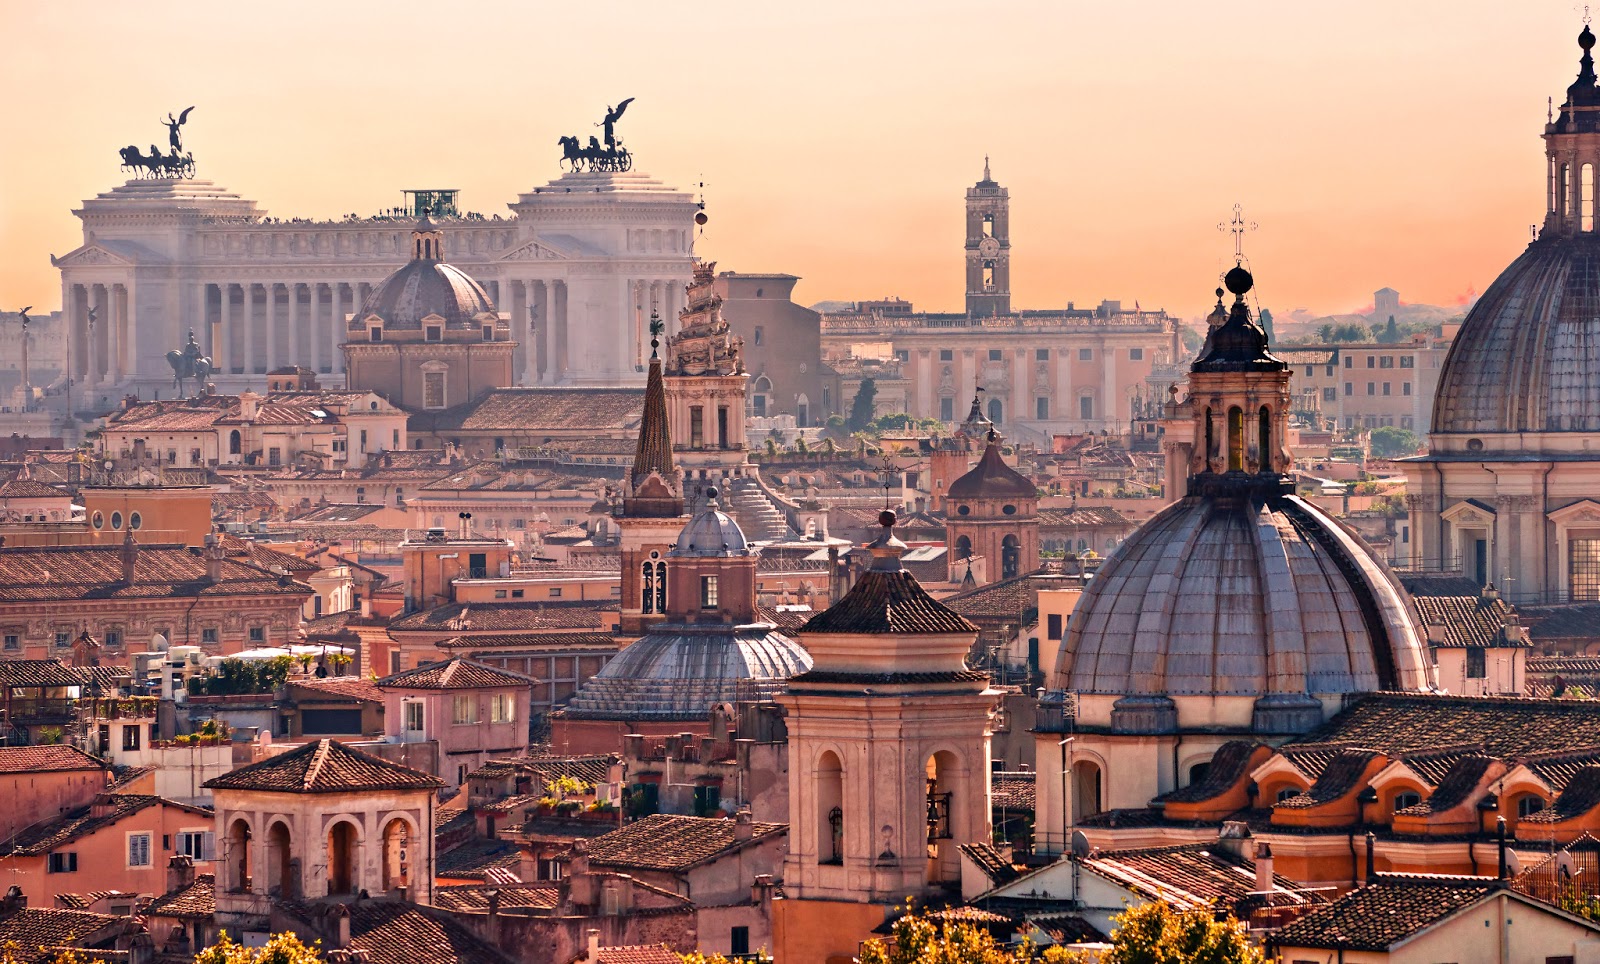 10 cose da vedere a Roma